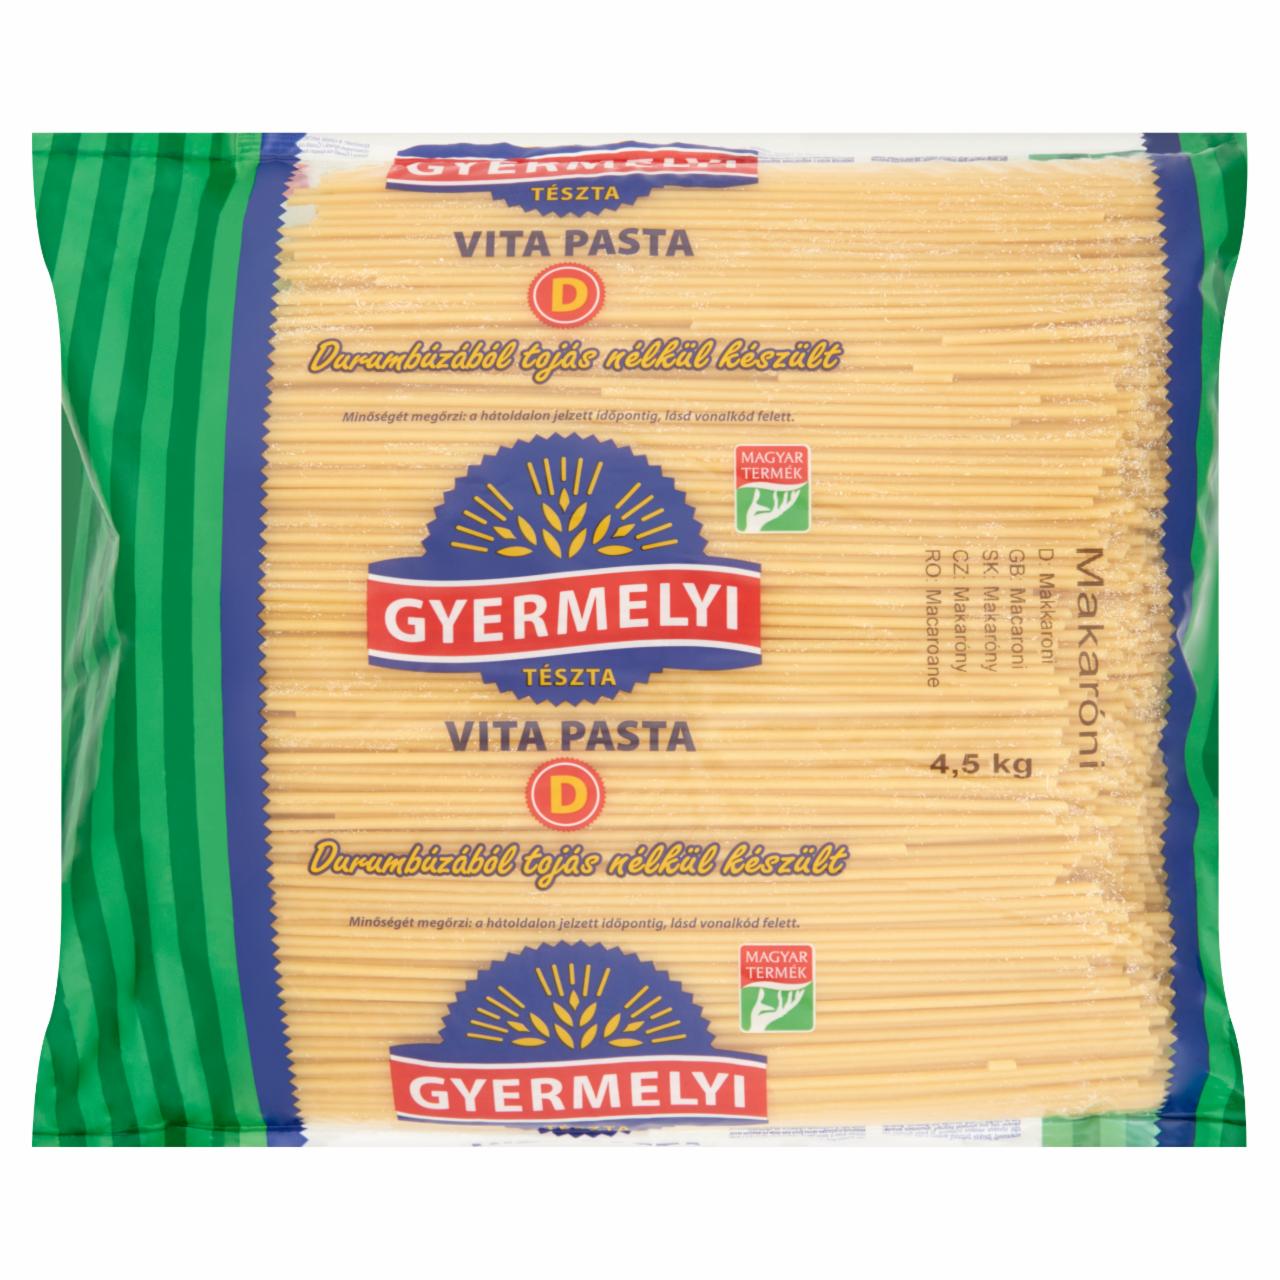 Képek - Gyermelyi Vita Pasta ömlesztett makaróni 2 x 4,5 kg